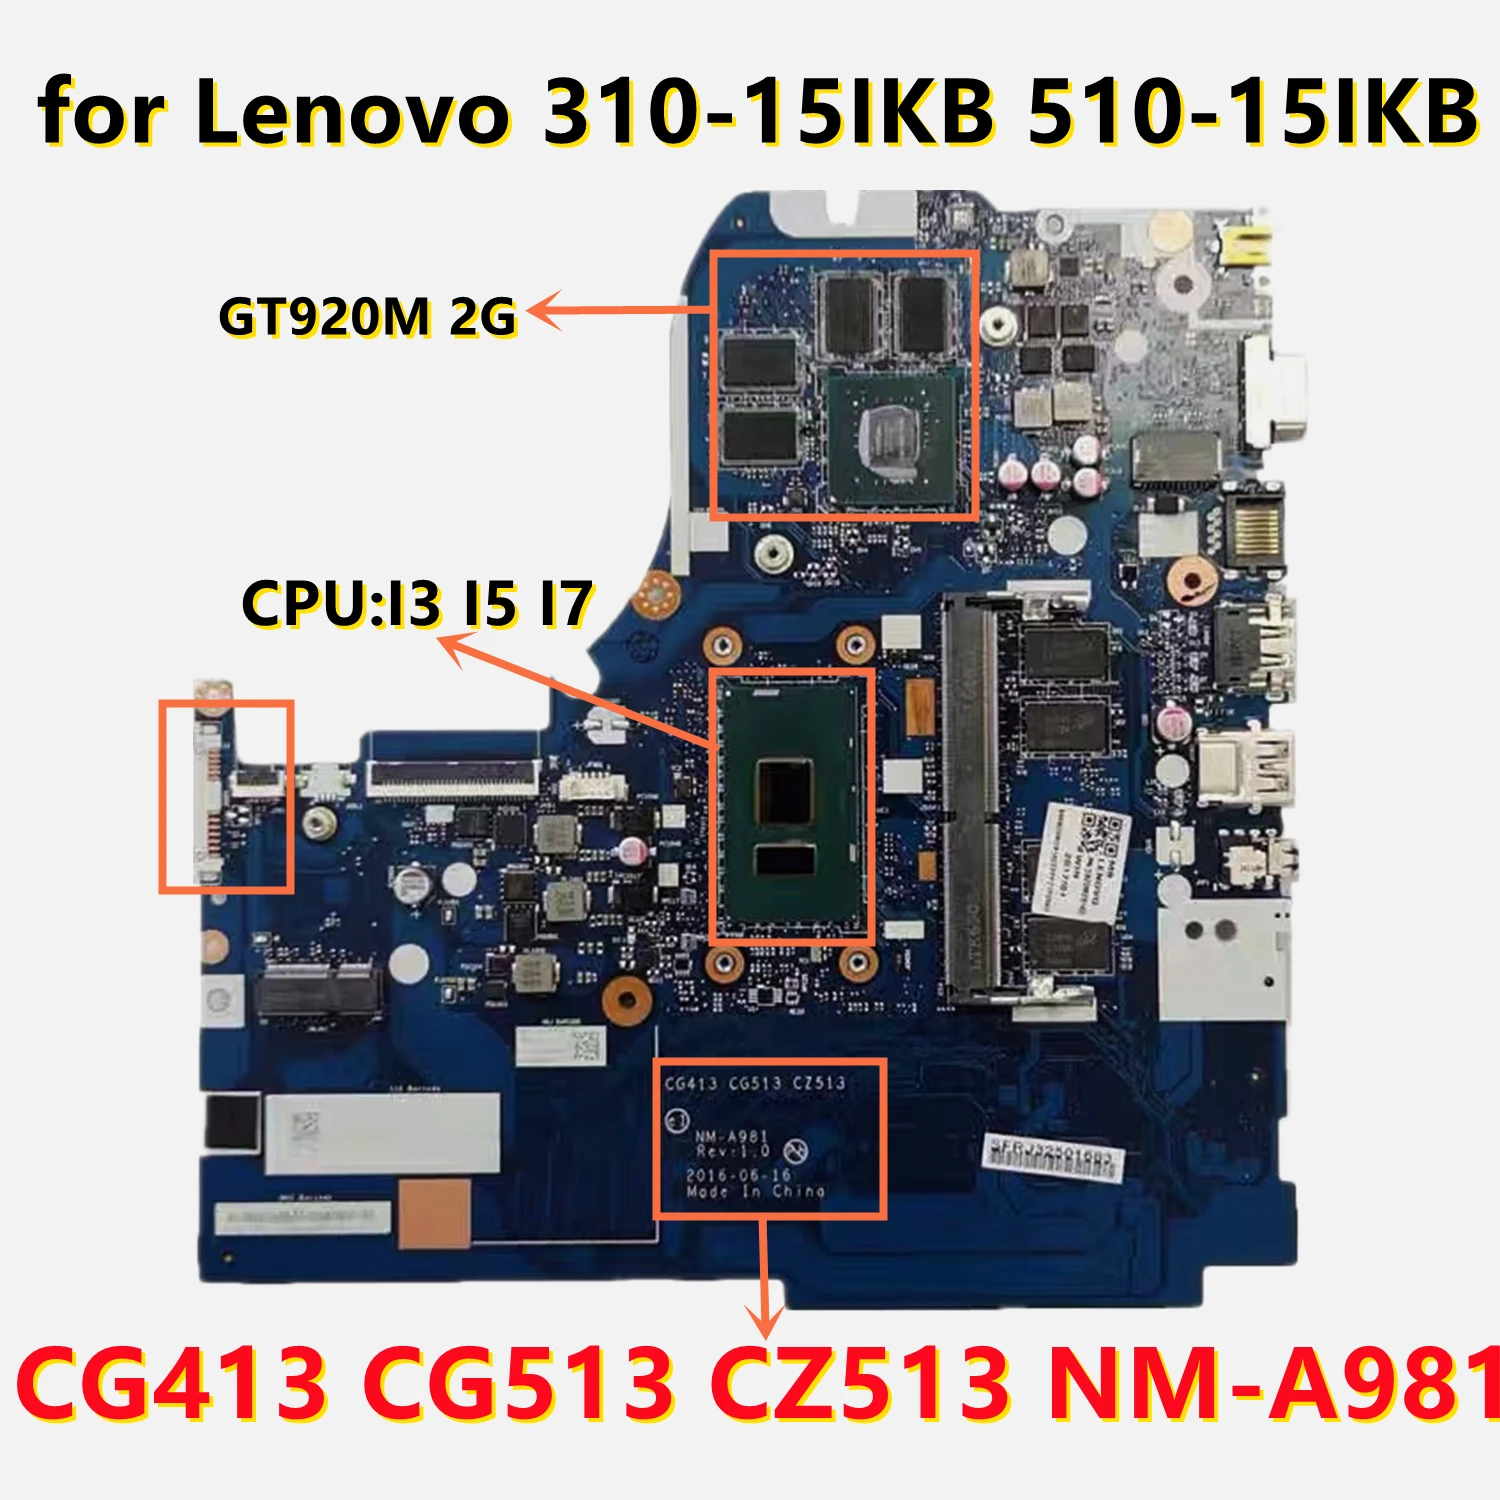 NM-A981    Lenovo 310-15IKB 510-15IKB i3 i5 i7 cpu GT920M GPU 4GB-RAM 5B20M31226 5B20M31162 5B20M29120